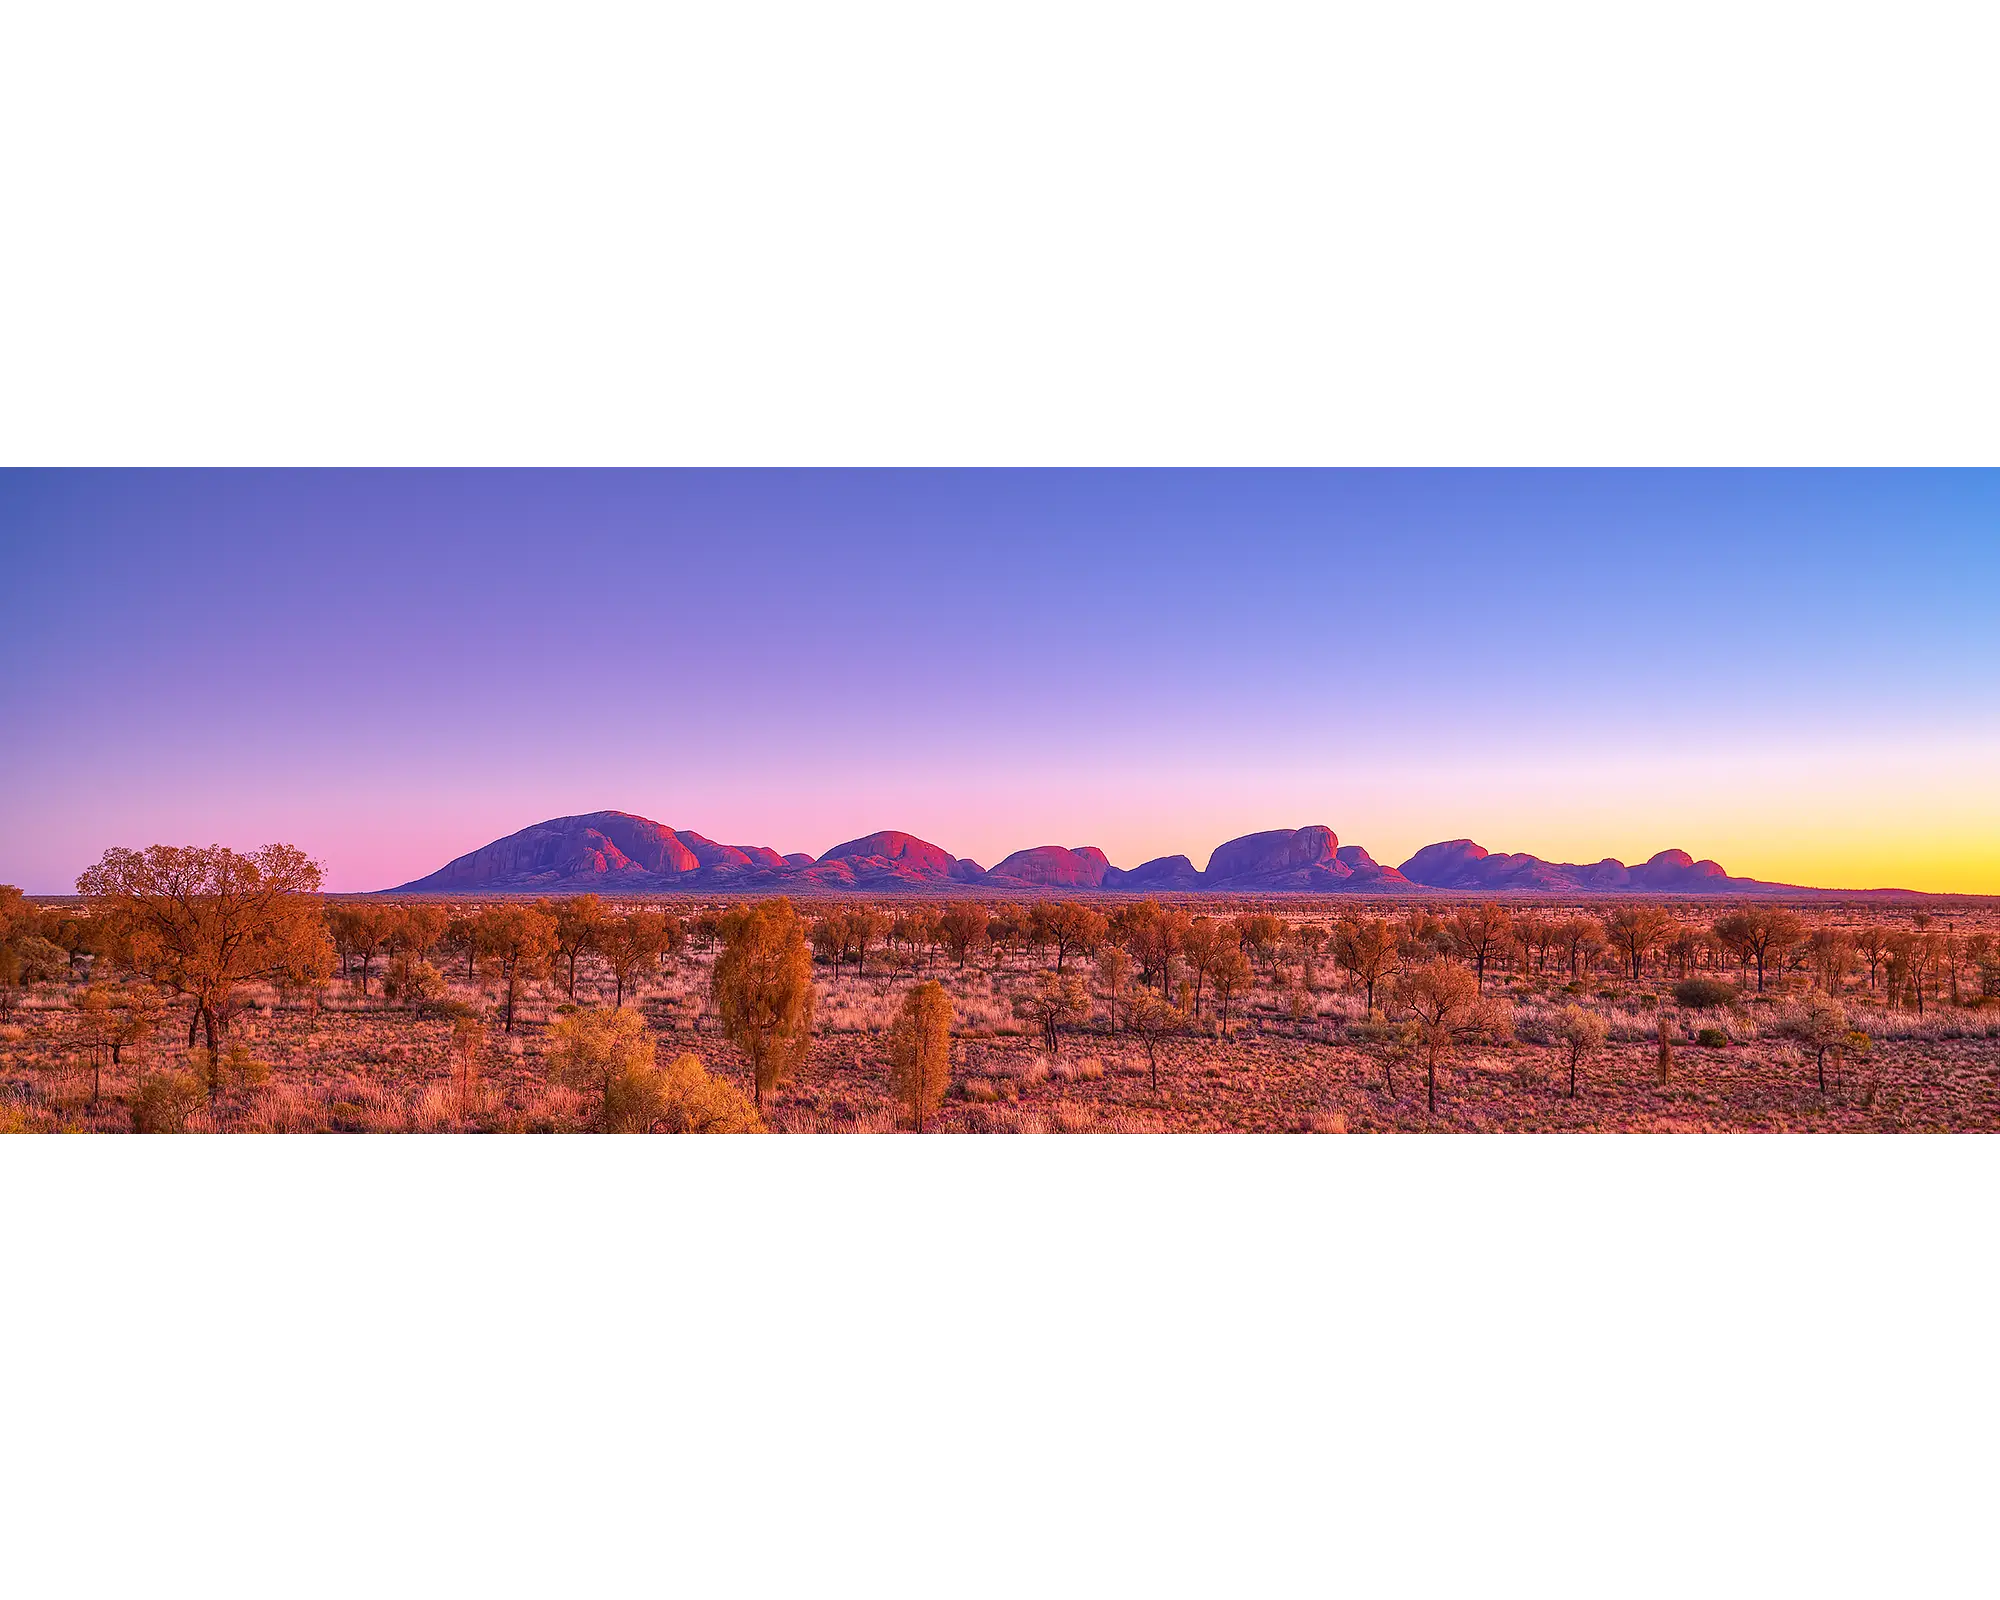 Natural Wonder - Sunrise over Olgas, Kata Tjuta, Northern Territory, Australia.